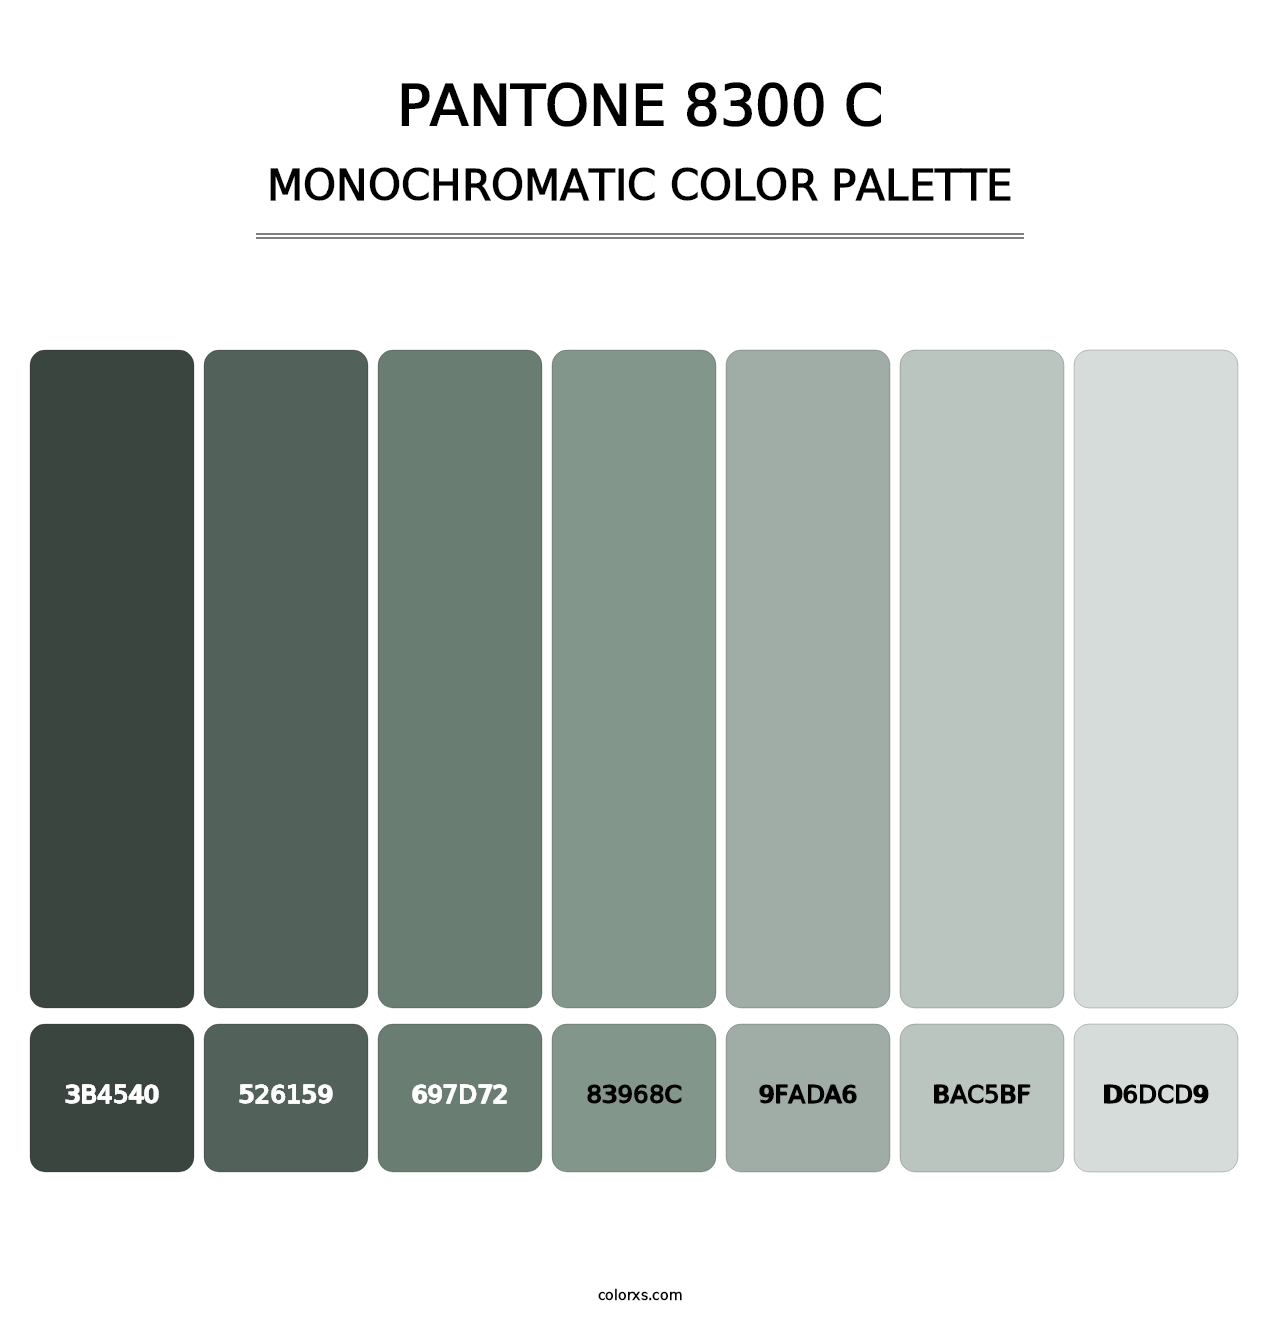 PANTONE 8300 C - Monochromatic Color Palette